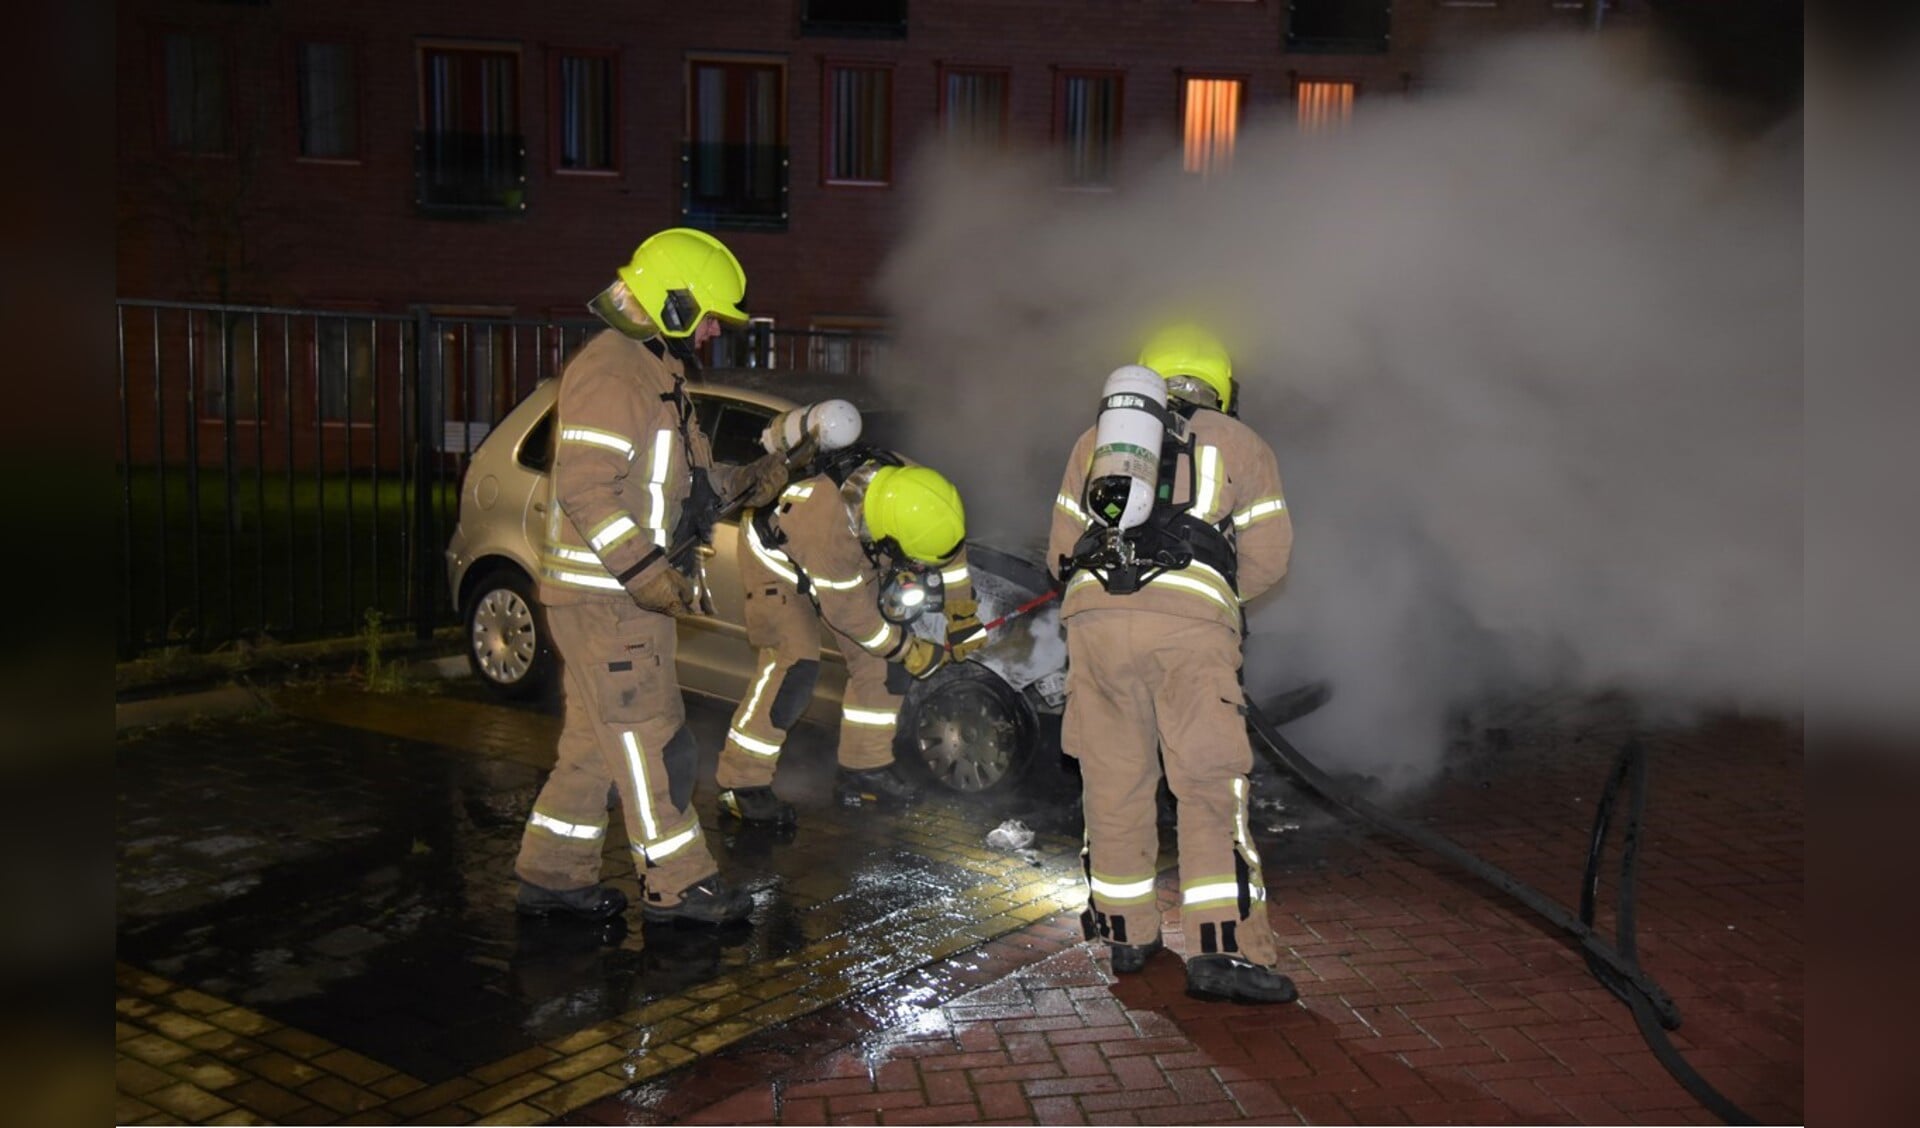 De auto brandde compleet uit. Foto: 112-rijnmond.nl.